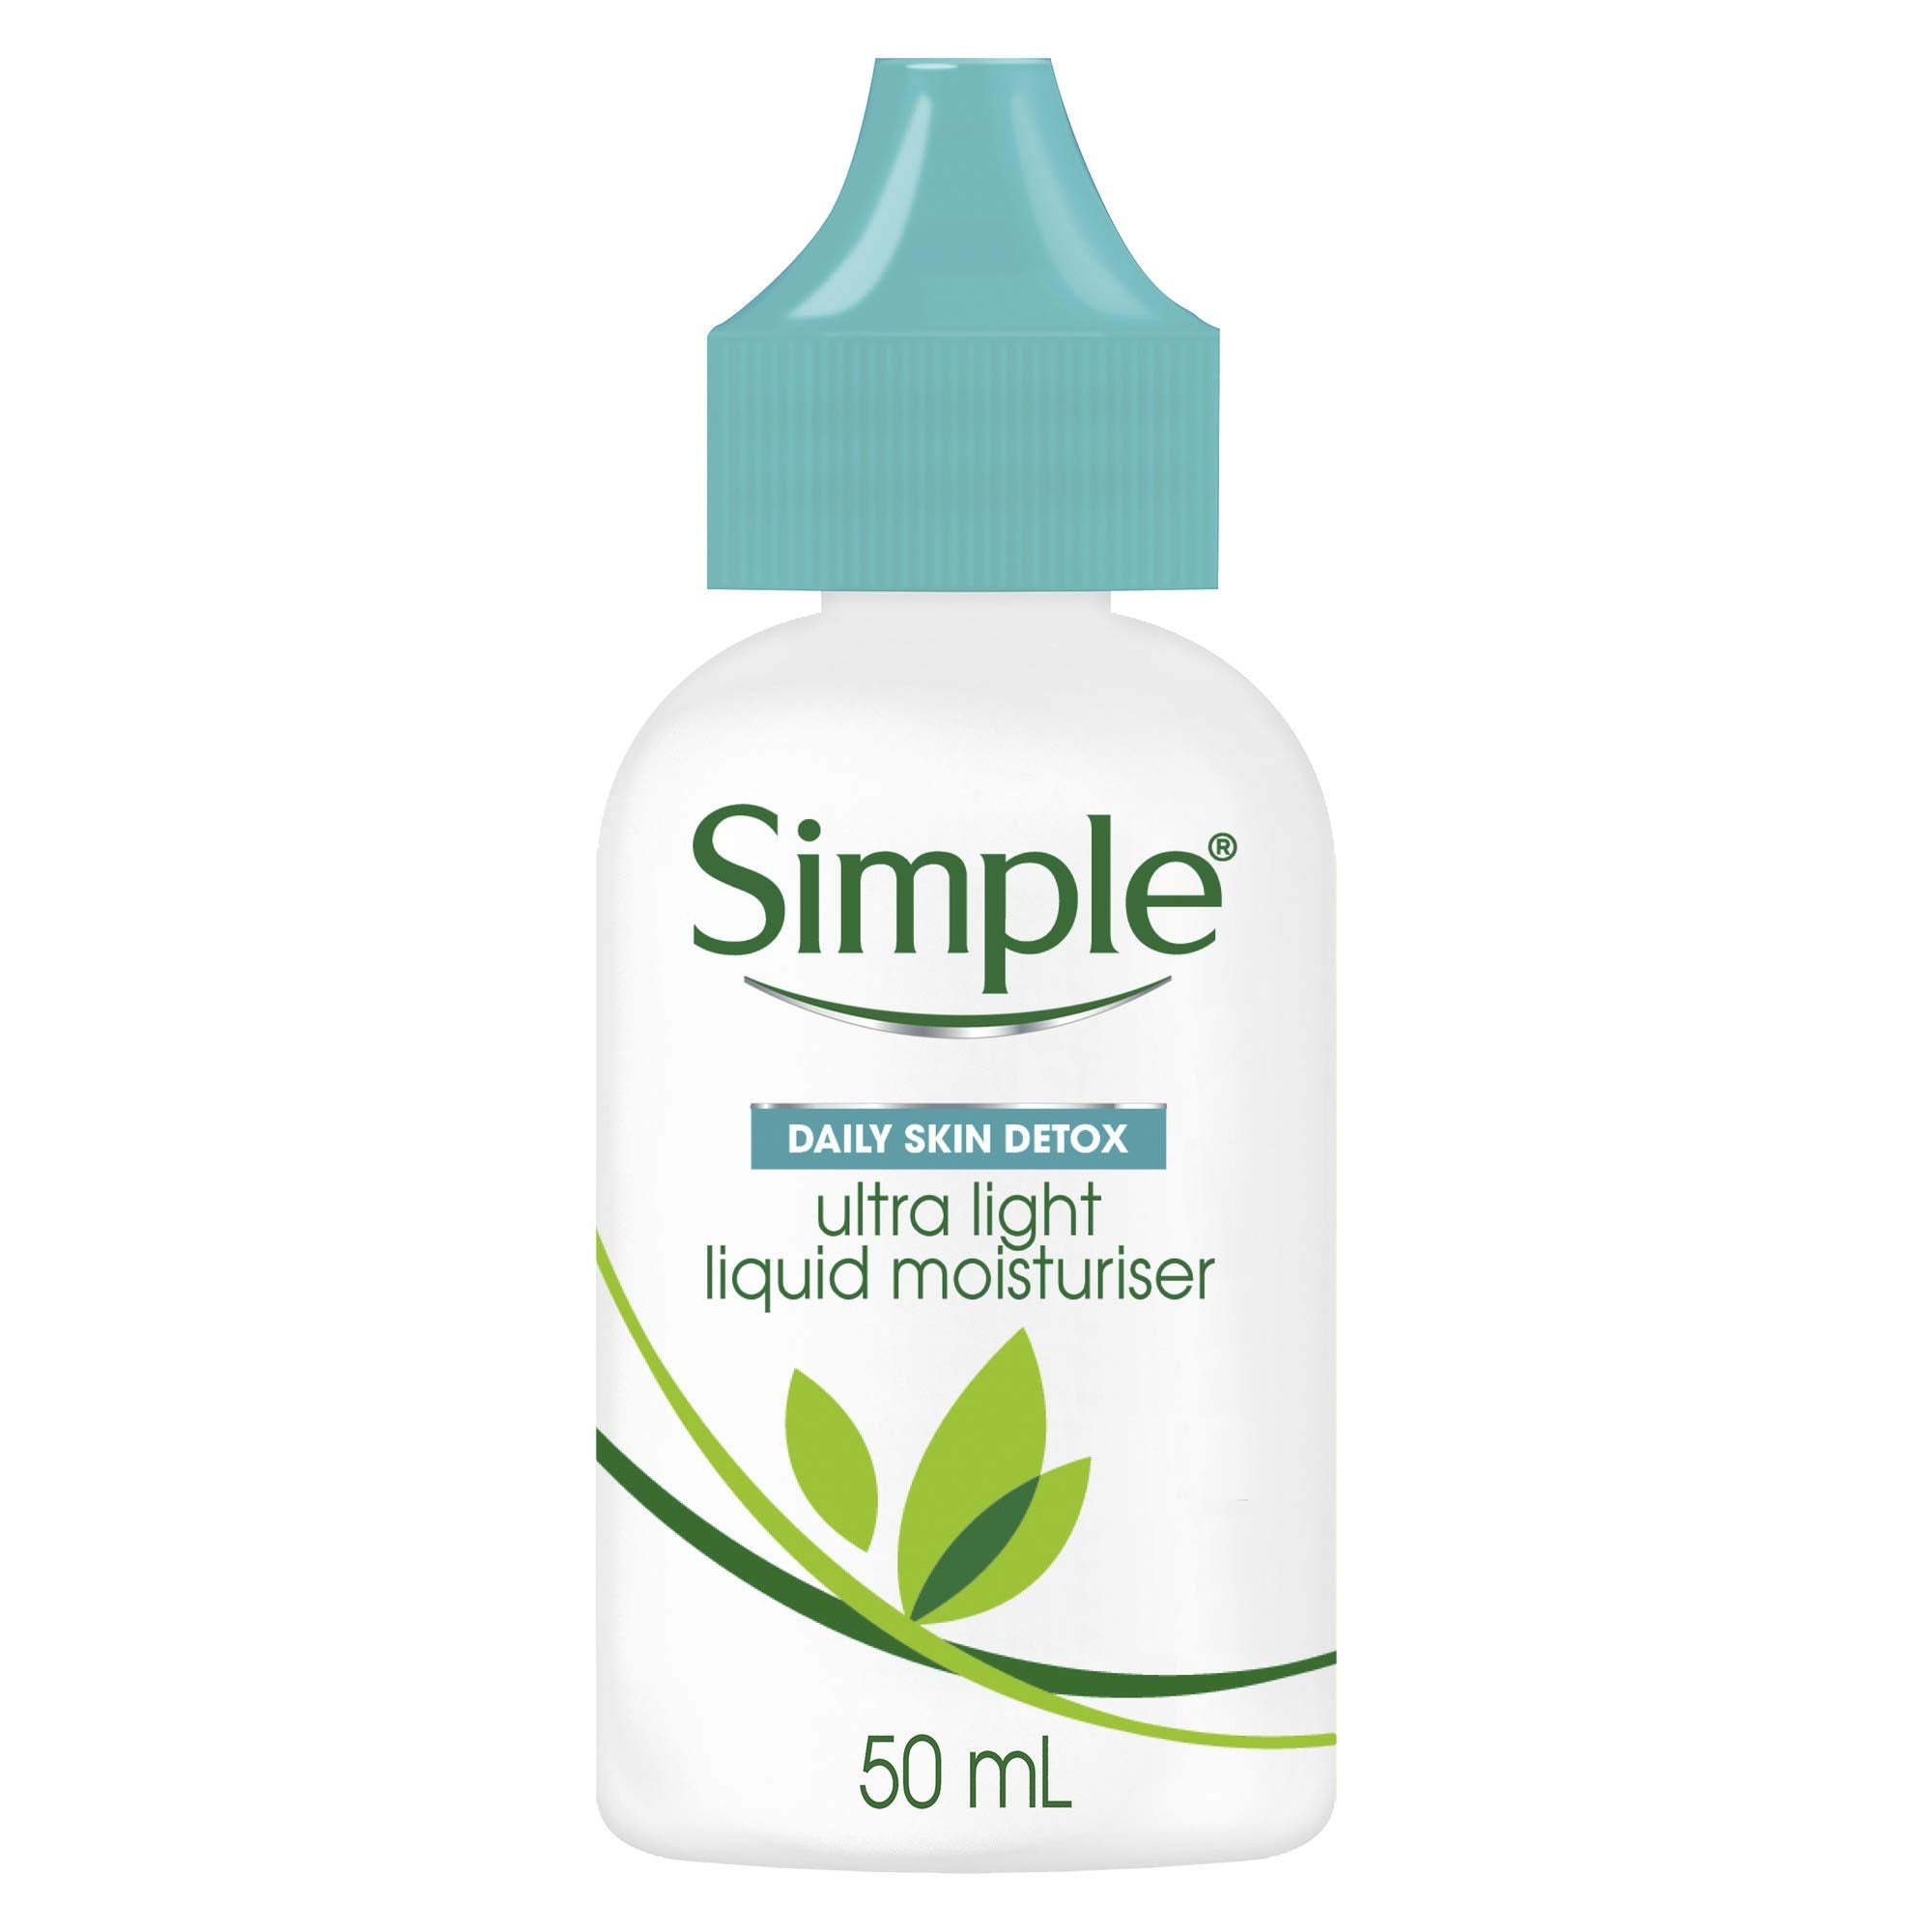 Simple Daily Skin Detox Ultra Light Liquid Moisturiser for Oily Skin, 50 ml